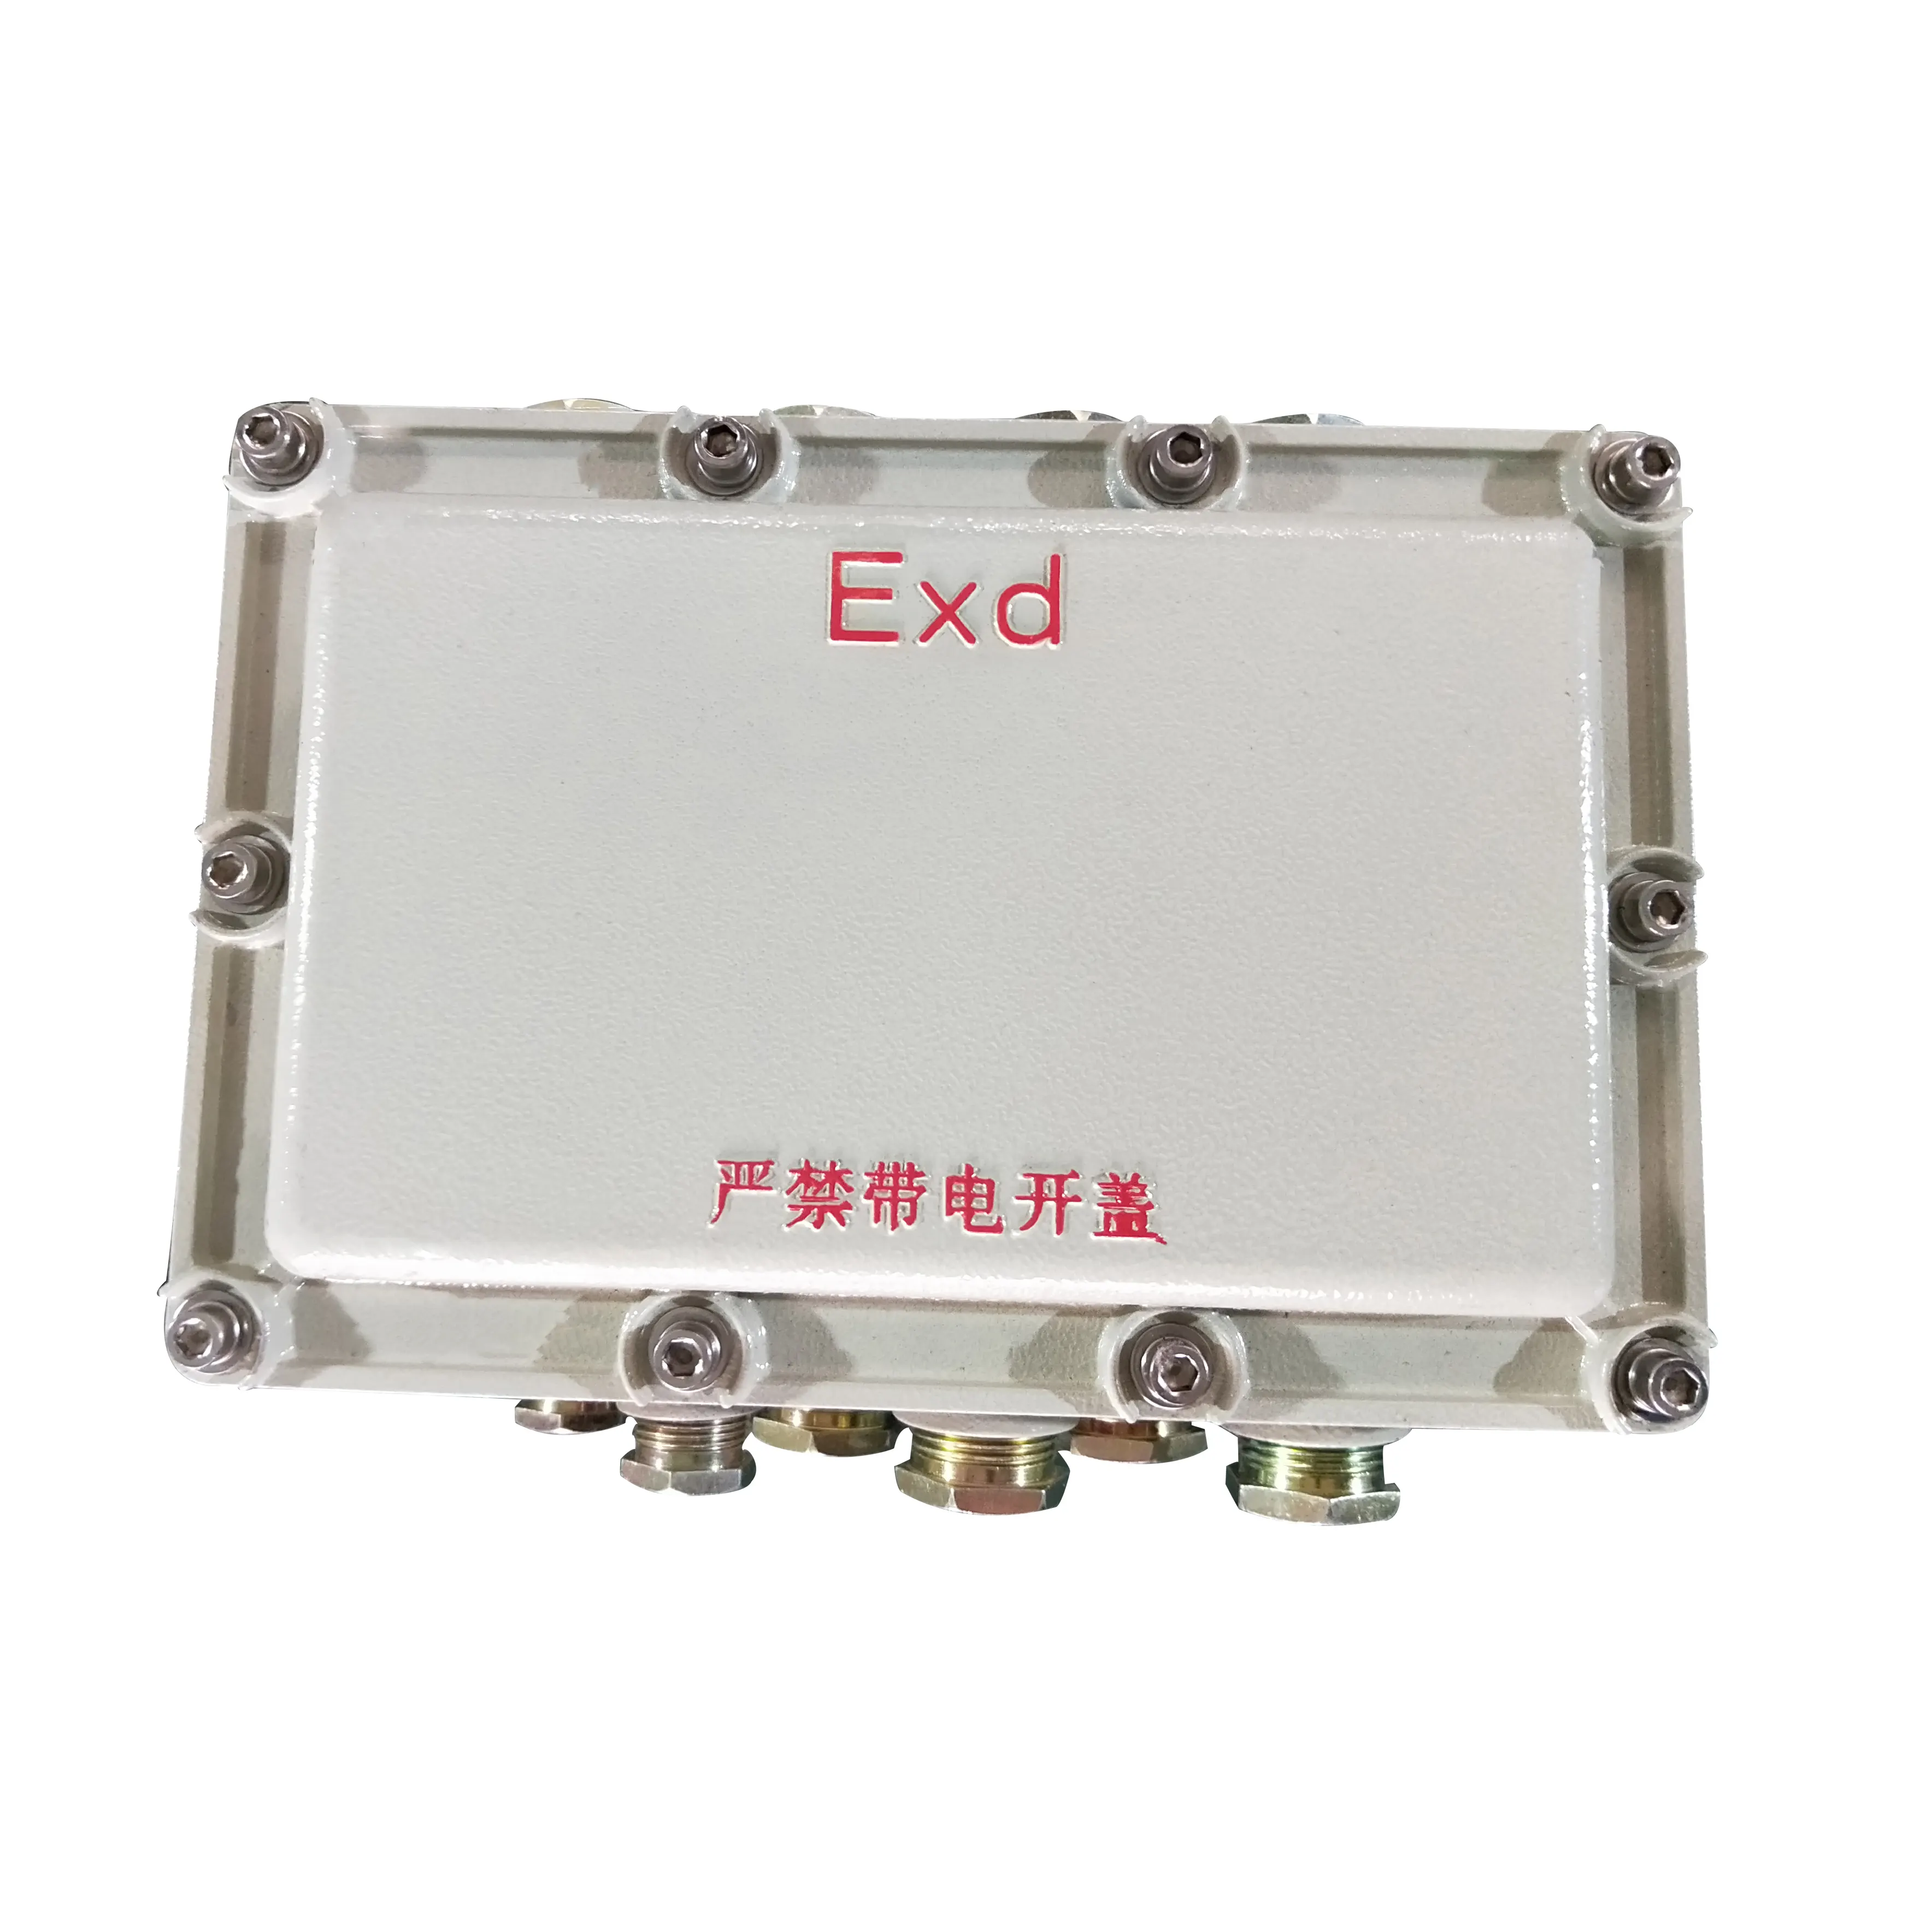 Mini boîte de jonction électrique étanche, boîte de jonction en aluminium antidéflagrant avec Terminal ATEX, BJX ventilation